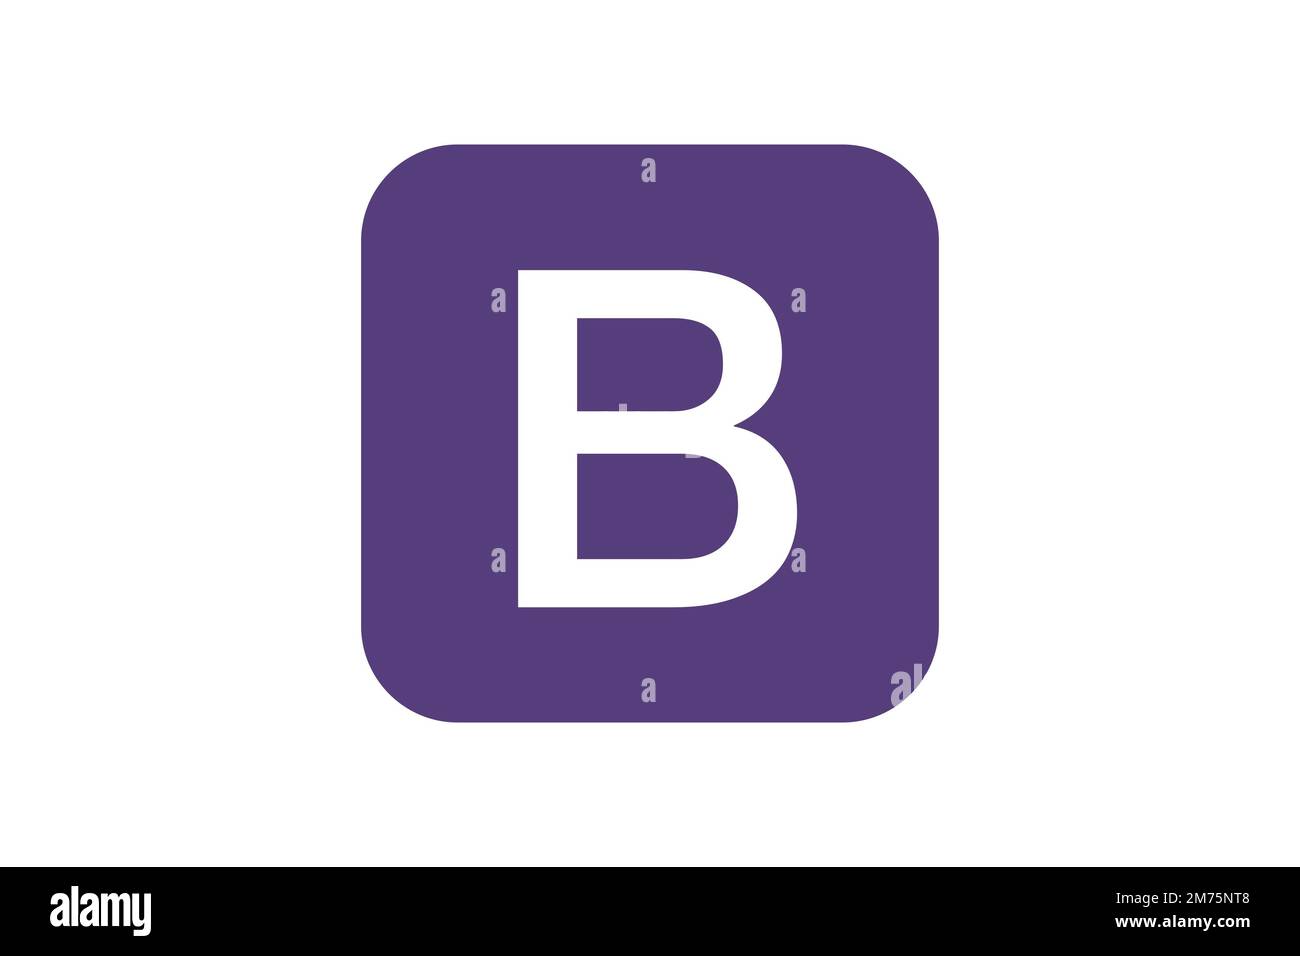 Logo Bootstrap không chỉ là biểu tượng của một thư viện mã nguồn mở phổ biến, mà còn được coi là biểu tượng của thế giới đồ họa thiết kế web. Nếu bạn muốn tìm hiểu thêm về Bootstrap và thiết kế web, hãy xem hình ảnh liên quan đến logo này nhé!